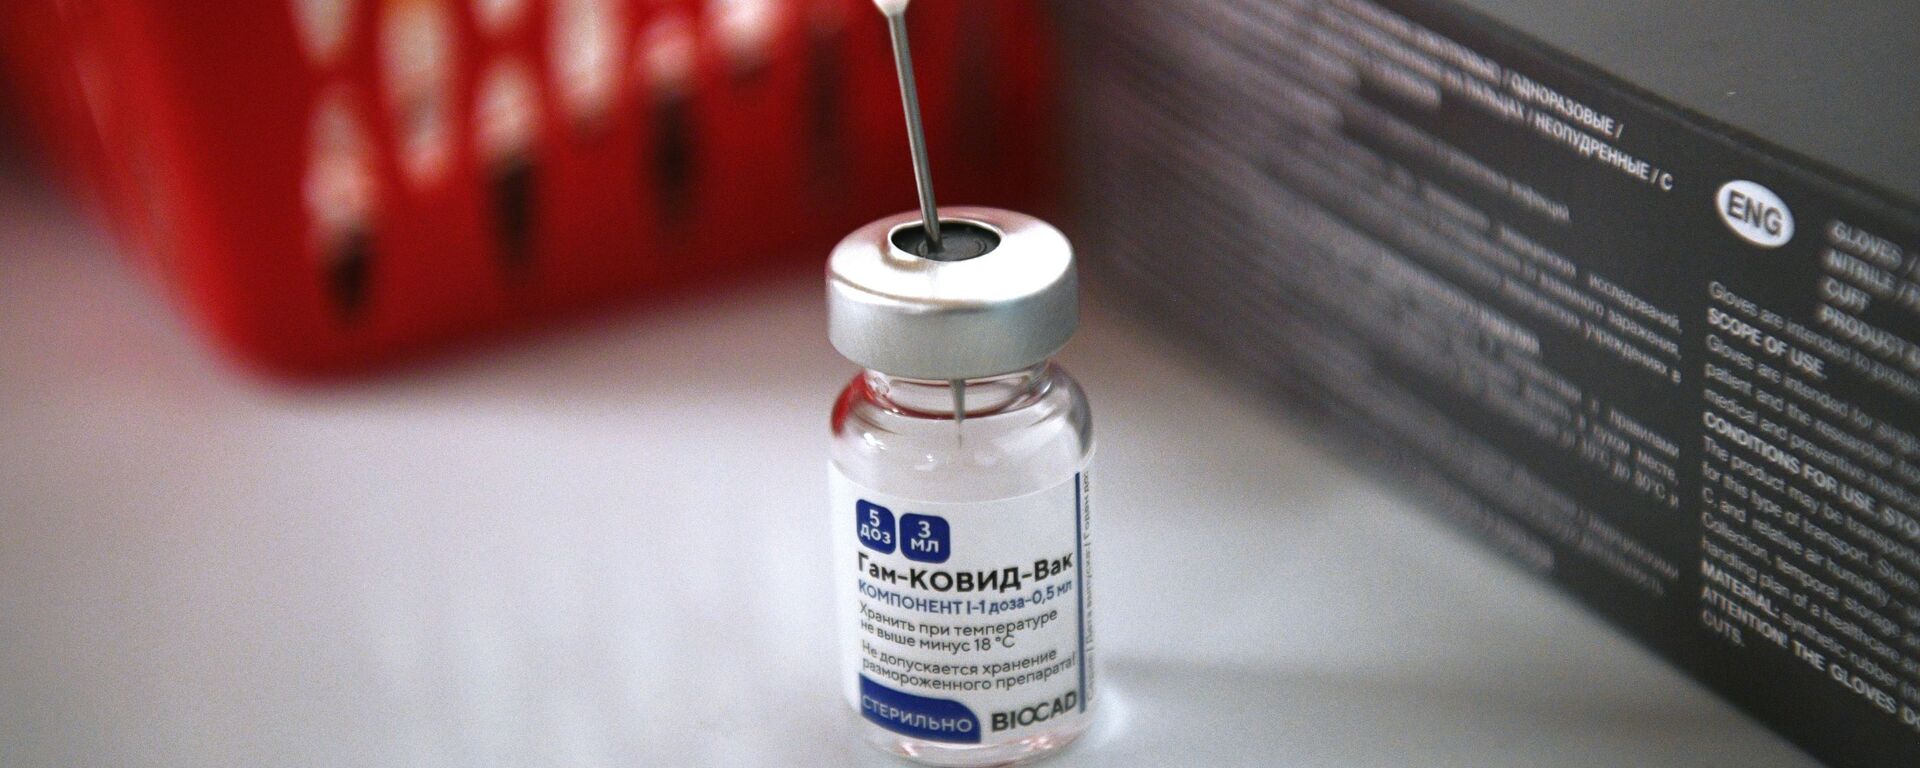 Vacuna rusa contra coronavirus Sputnik V - Sputnik Mundo, 1920, 28.01.2021